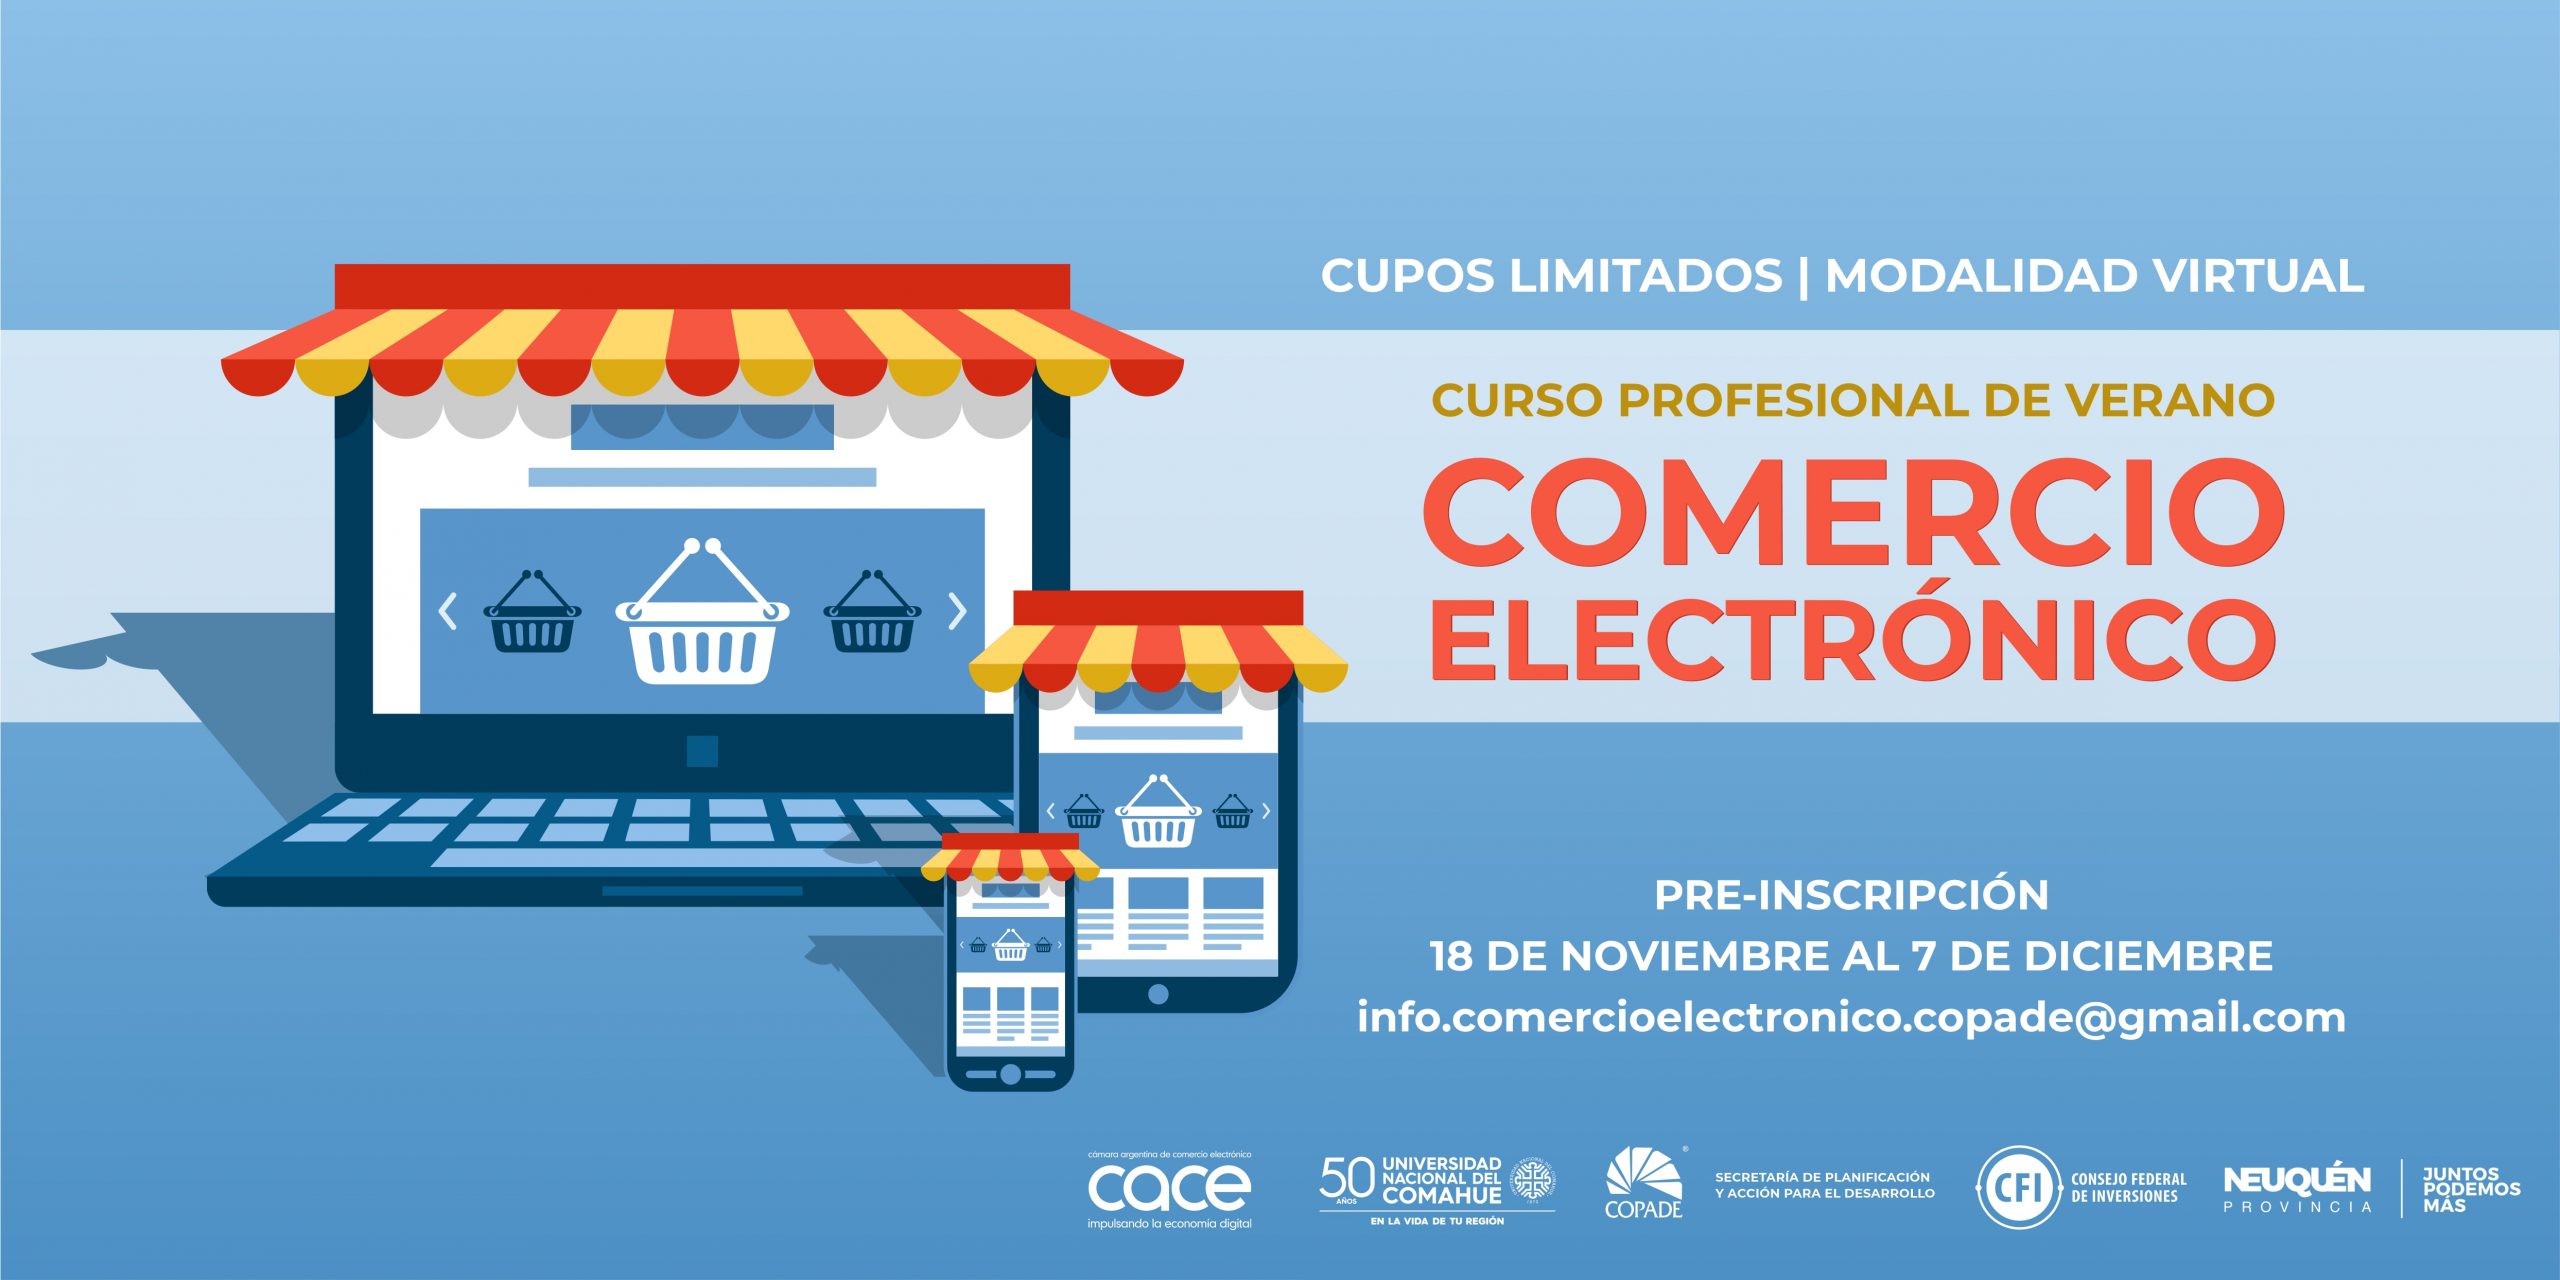 COPADE lanza una capacitación gratuita en comercio electrónico para MiPyMEs y el sector emprendedor